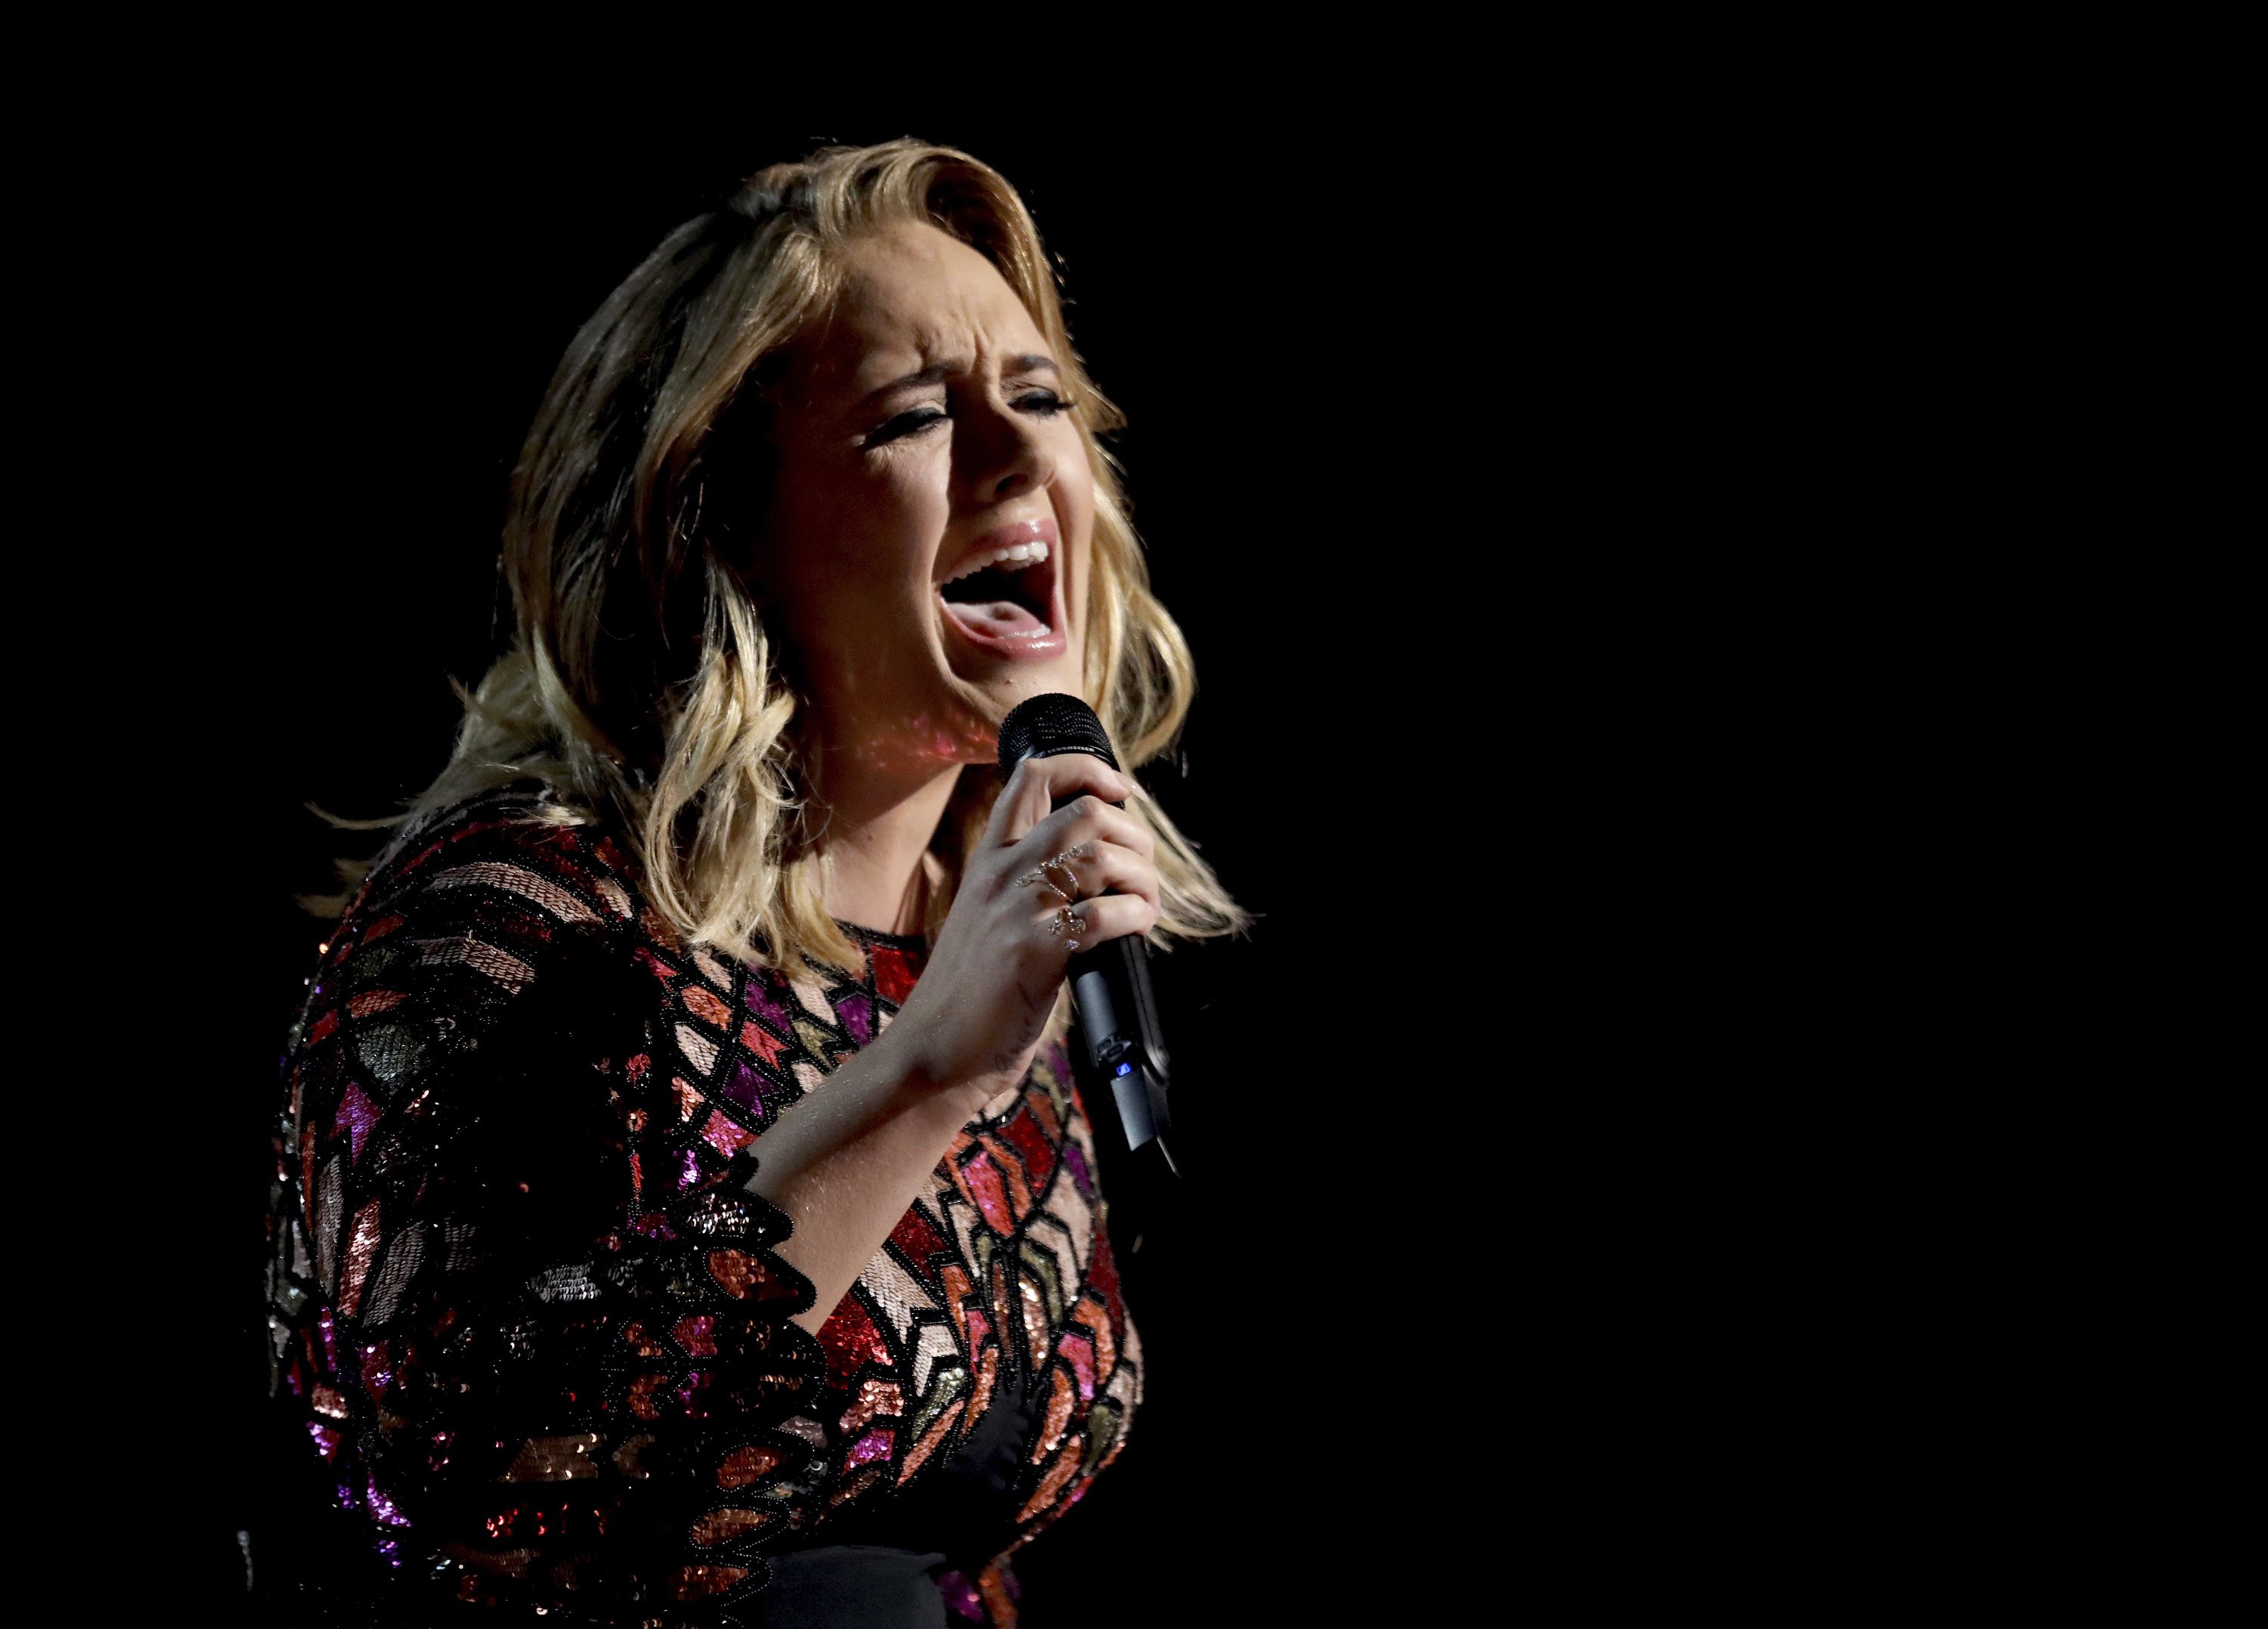 IRRECONOCIBLE Adele deja a los fans atónitos por lo que se ha hecho: "Dios mío!"